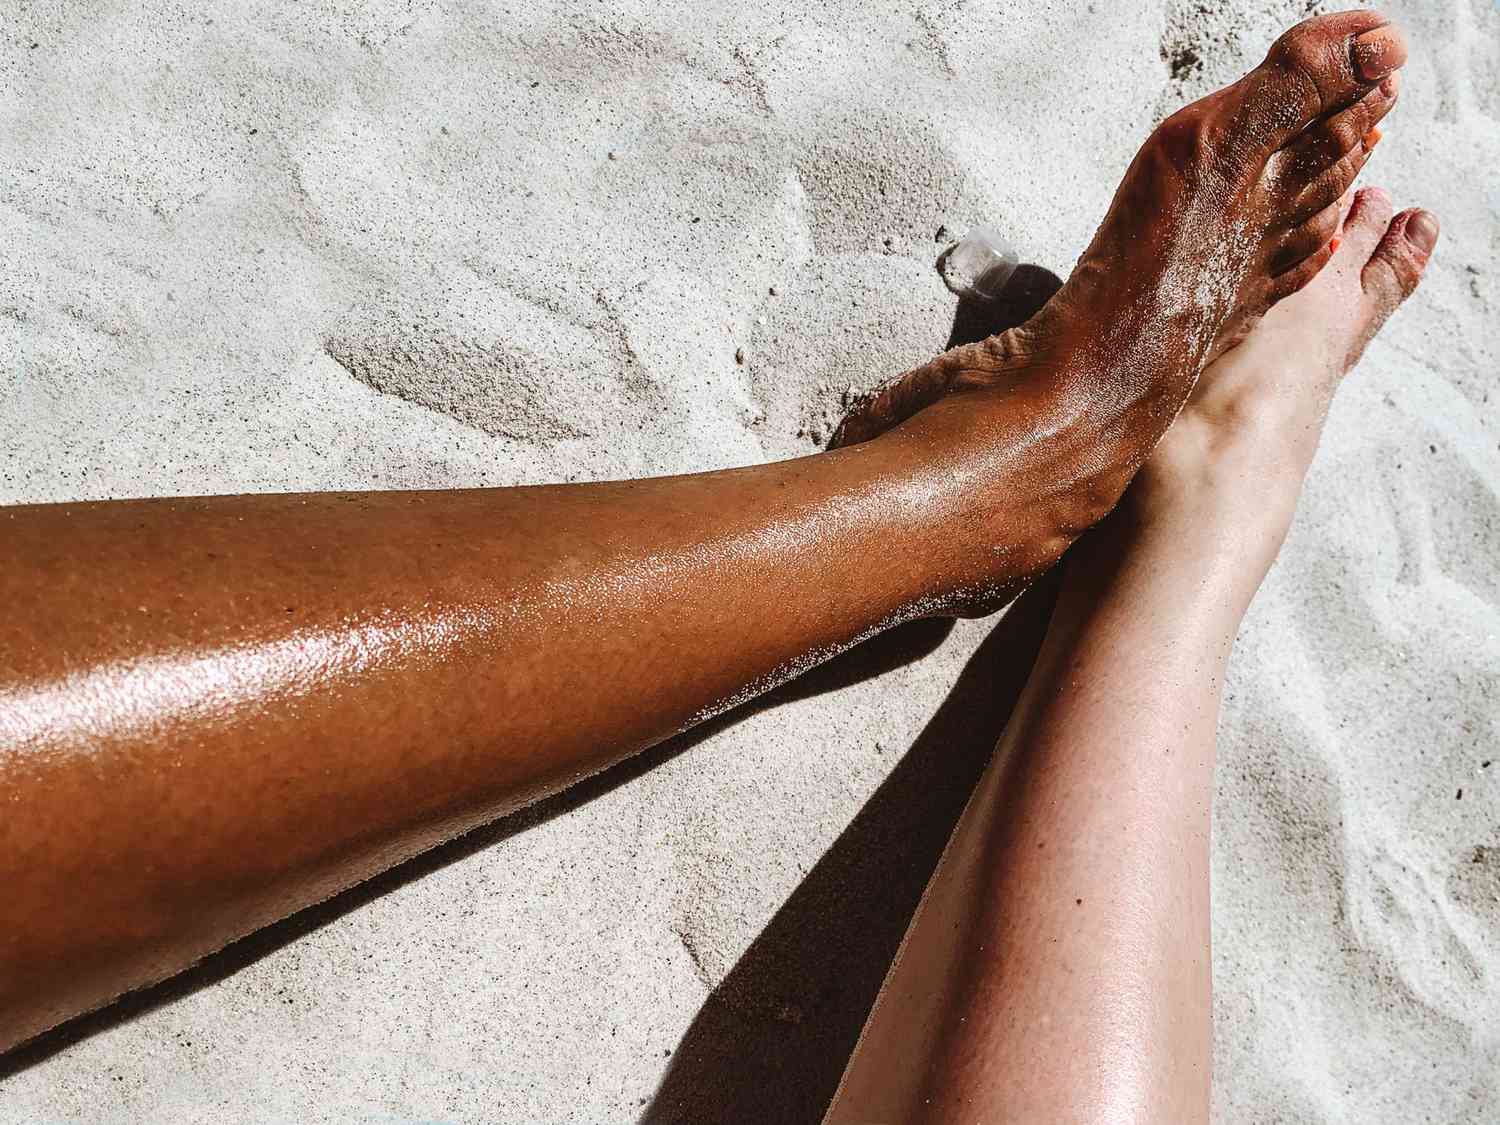 smooth legs on a beach - no ingrown hair